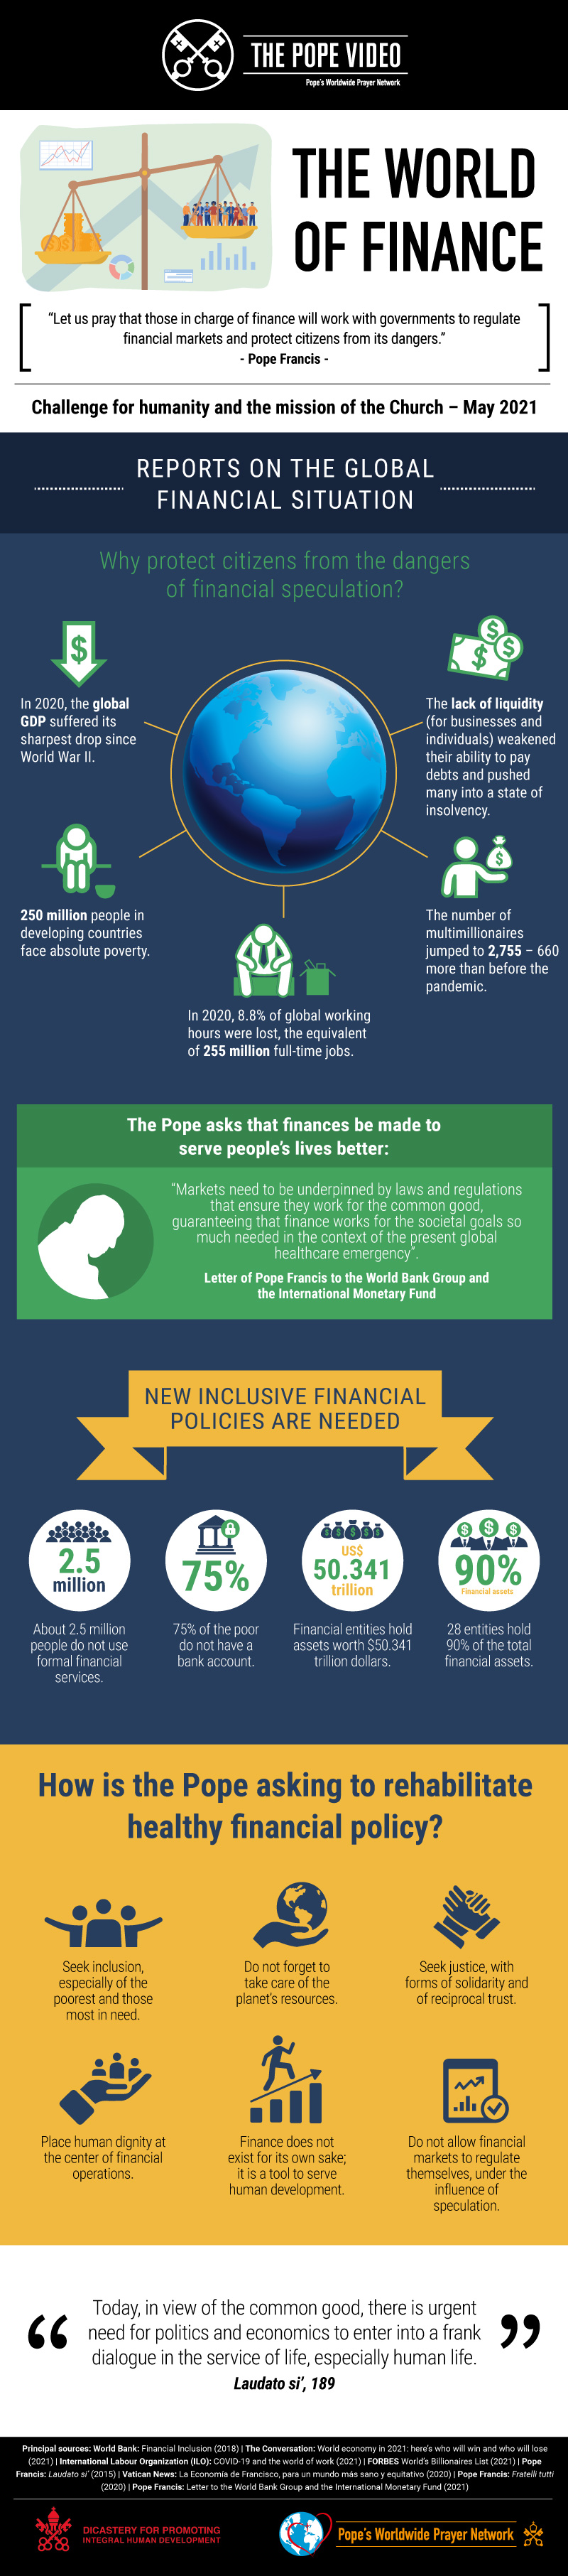 Infographic-TPV-5-2021-EN-The-world-of-finance.jpg